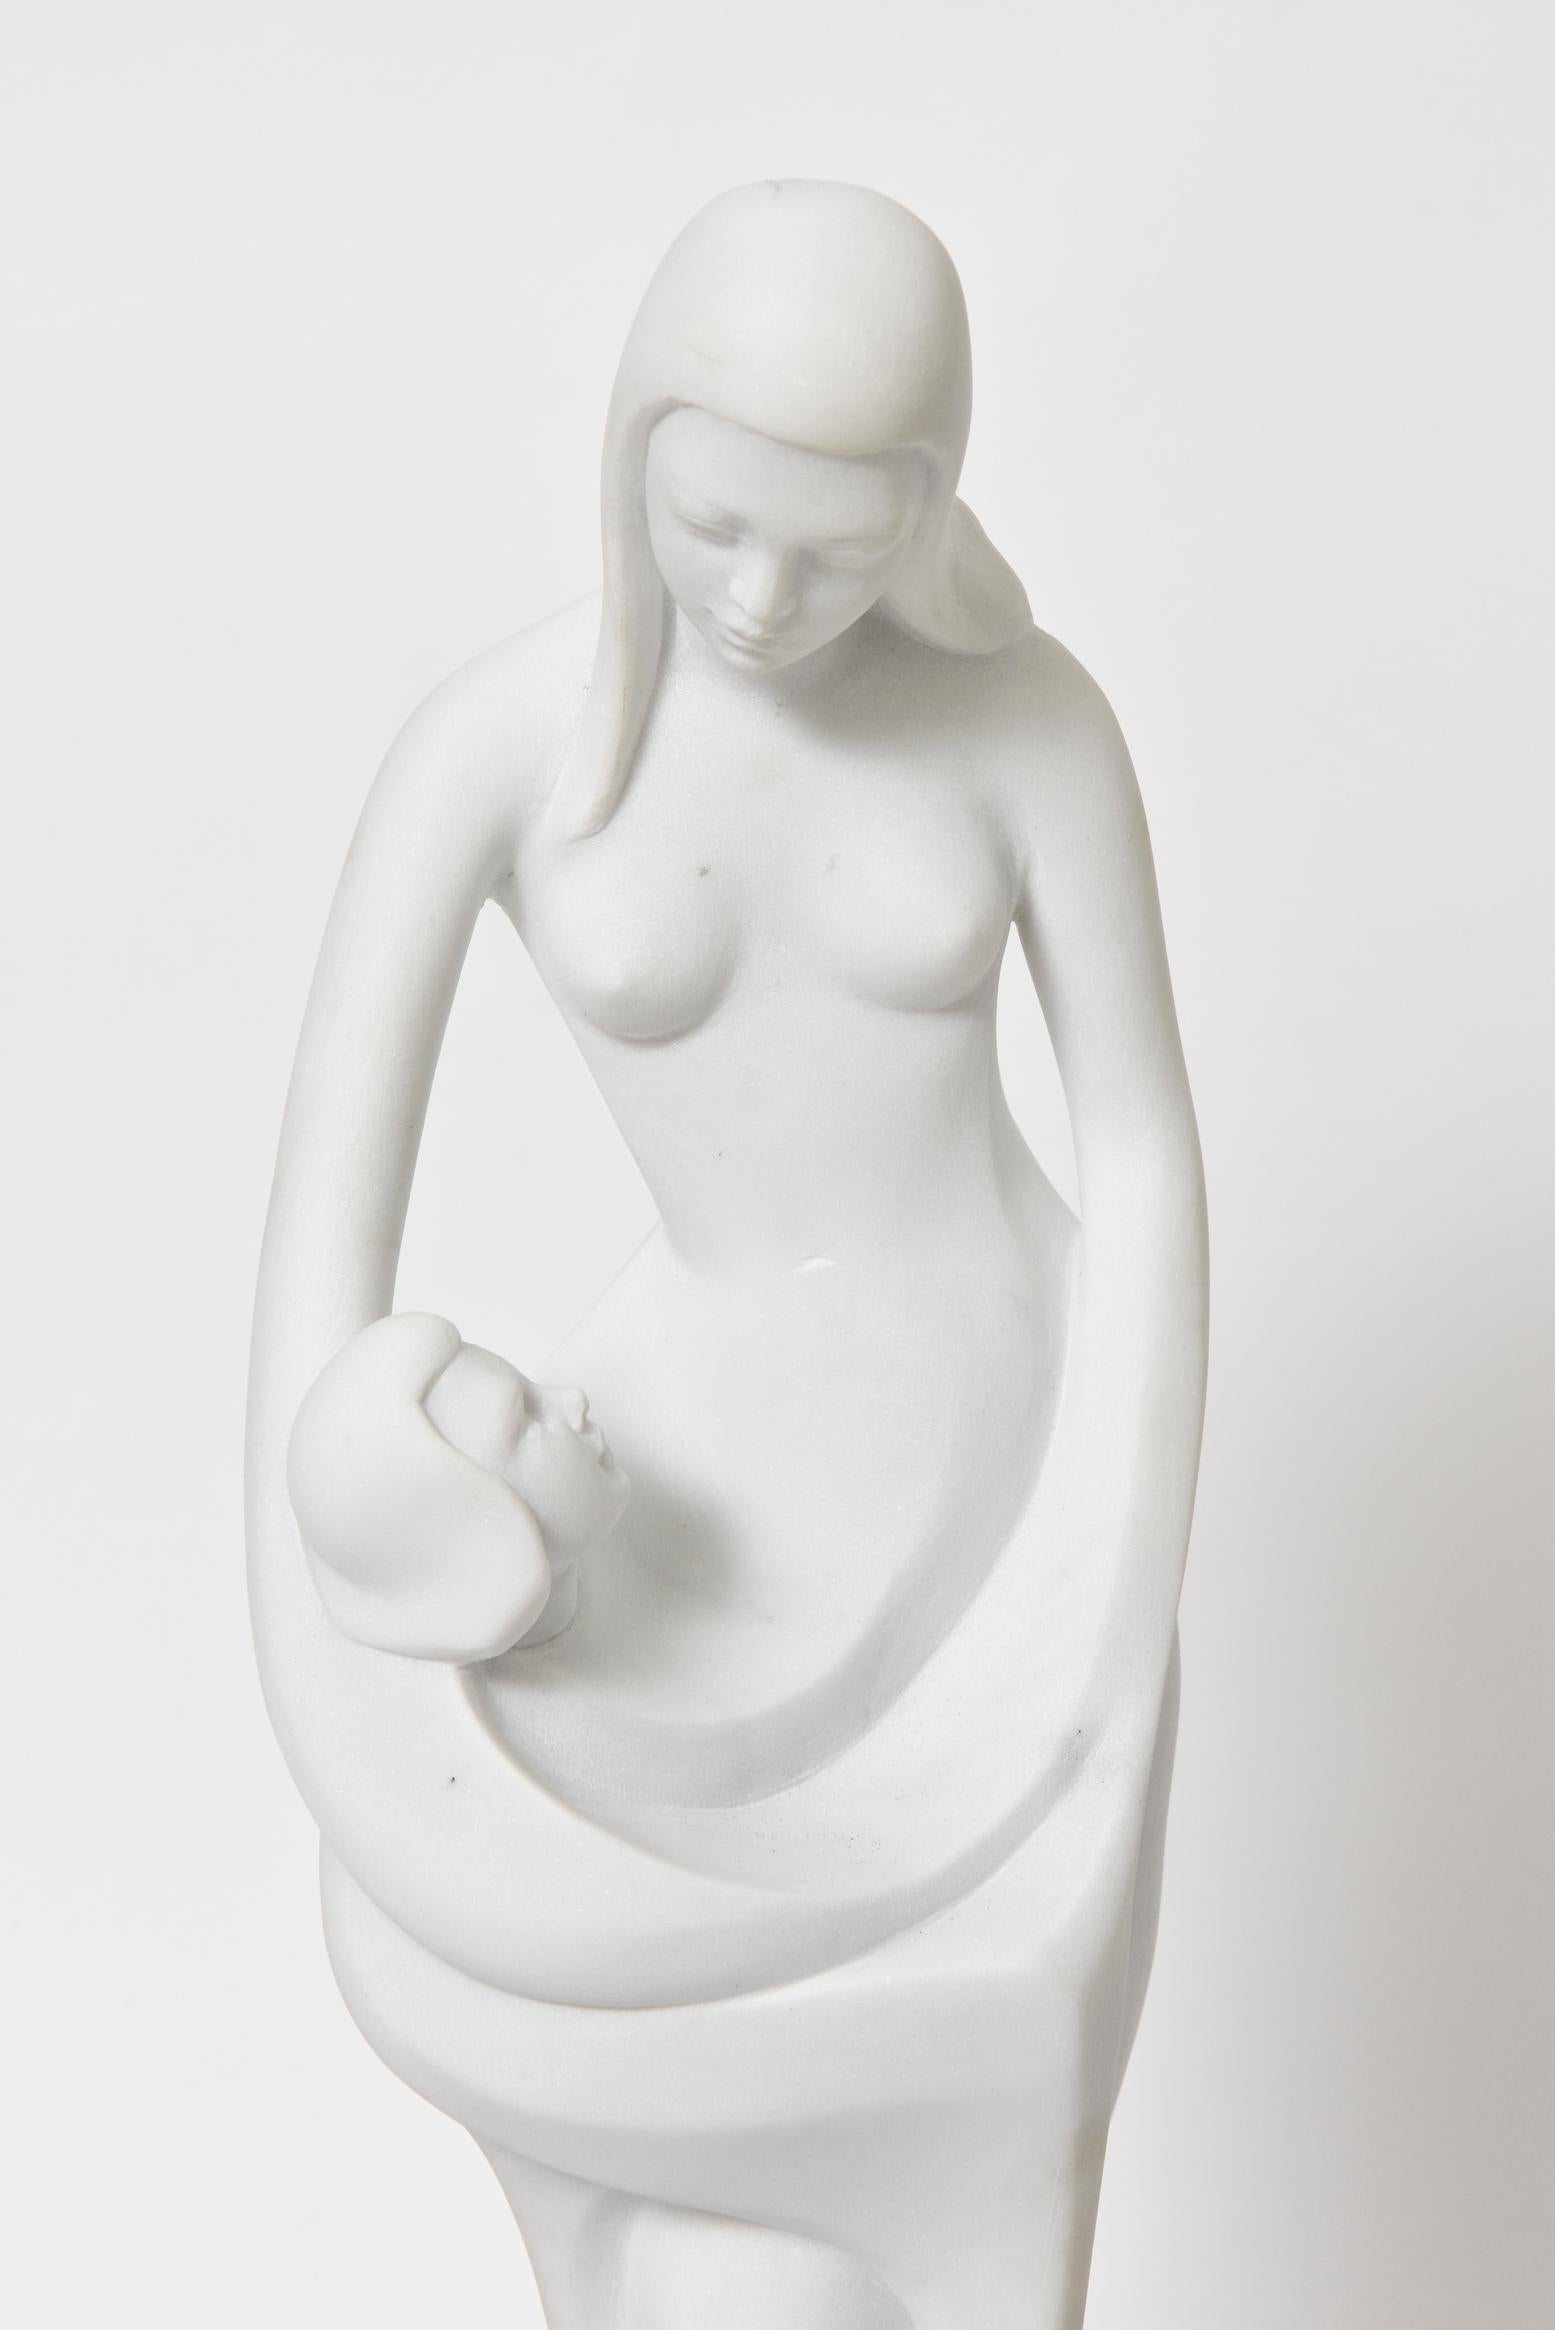 Enzo Gallo schnitzte diese abstrakte Marmorskulptur, die ein in den Körper seiner Mutter verschlungenes Kind darstellt. 

Enzo Gallo (geb. 1927 in Italien) ist ein bildender Künstler, der hauptsächlich in Marmor und Bronze arbeitet. Er gilt als